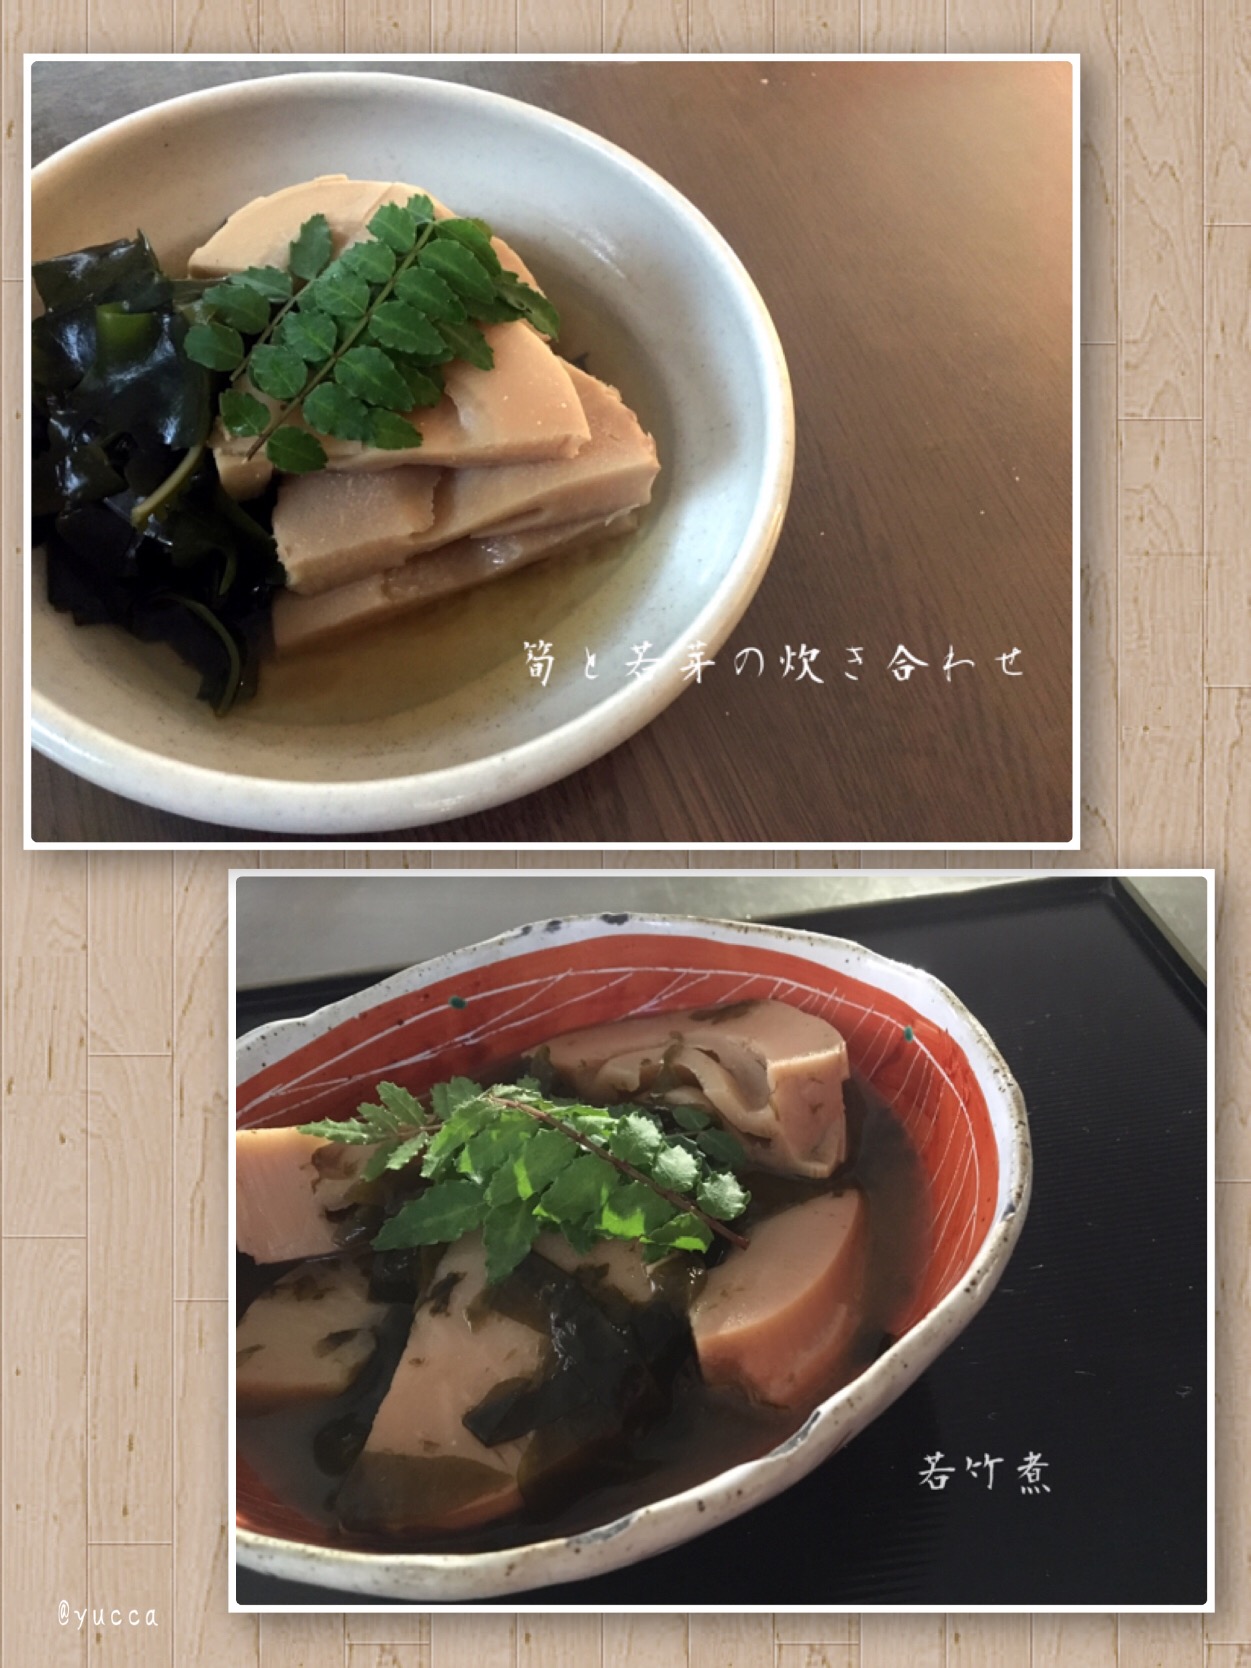 筍とワカメの炊き合わせ  からの
sakurakoさんの料理 朝掘り筍の煮物～我が家の若竹煮～